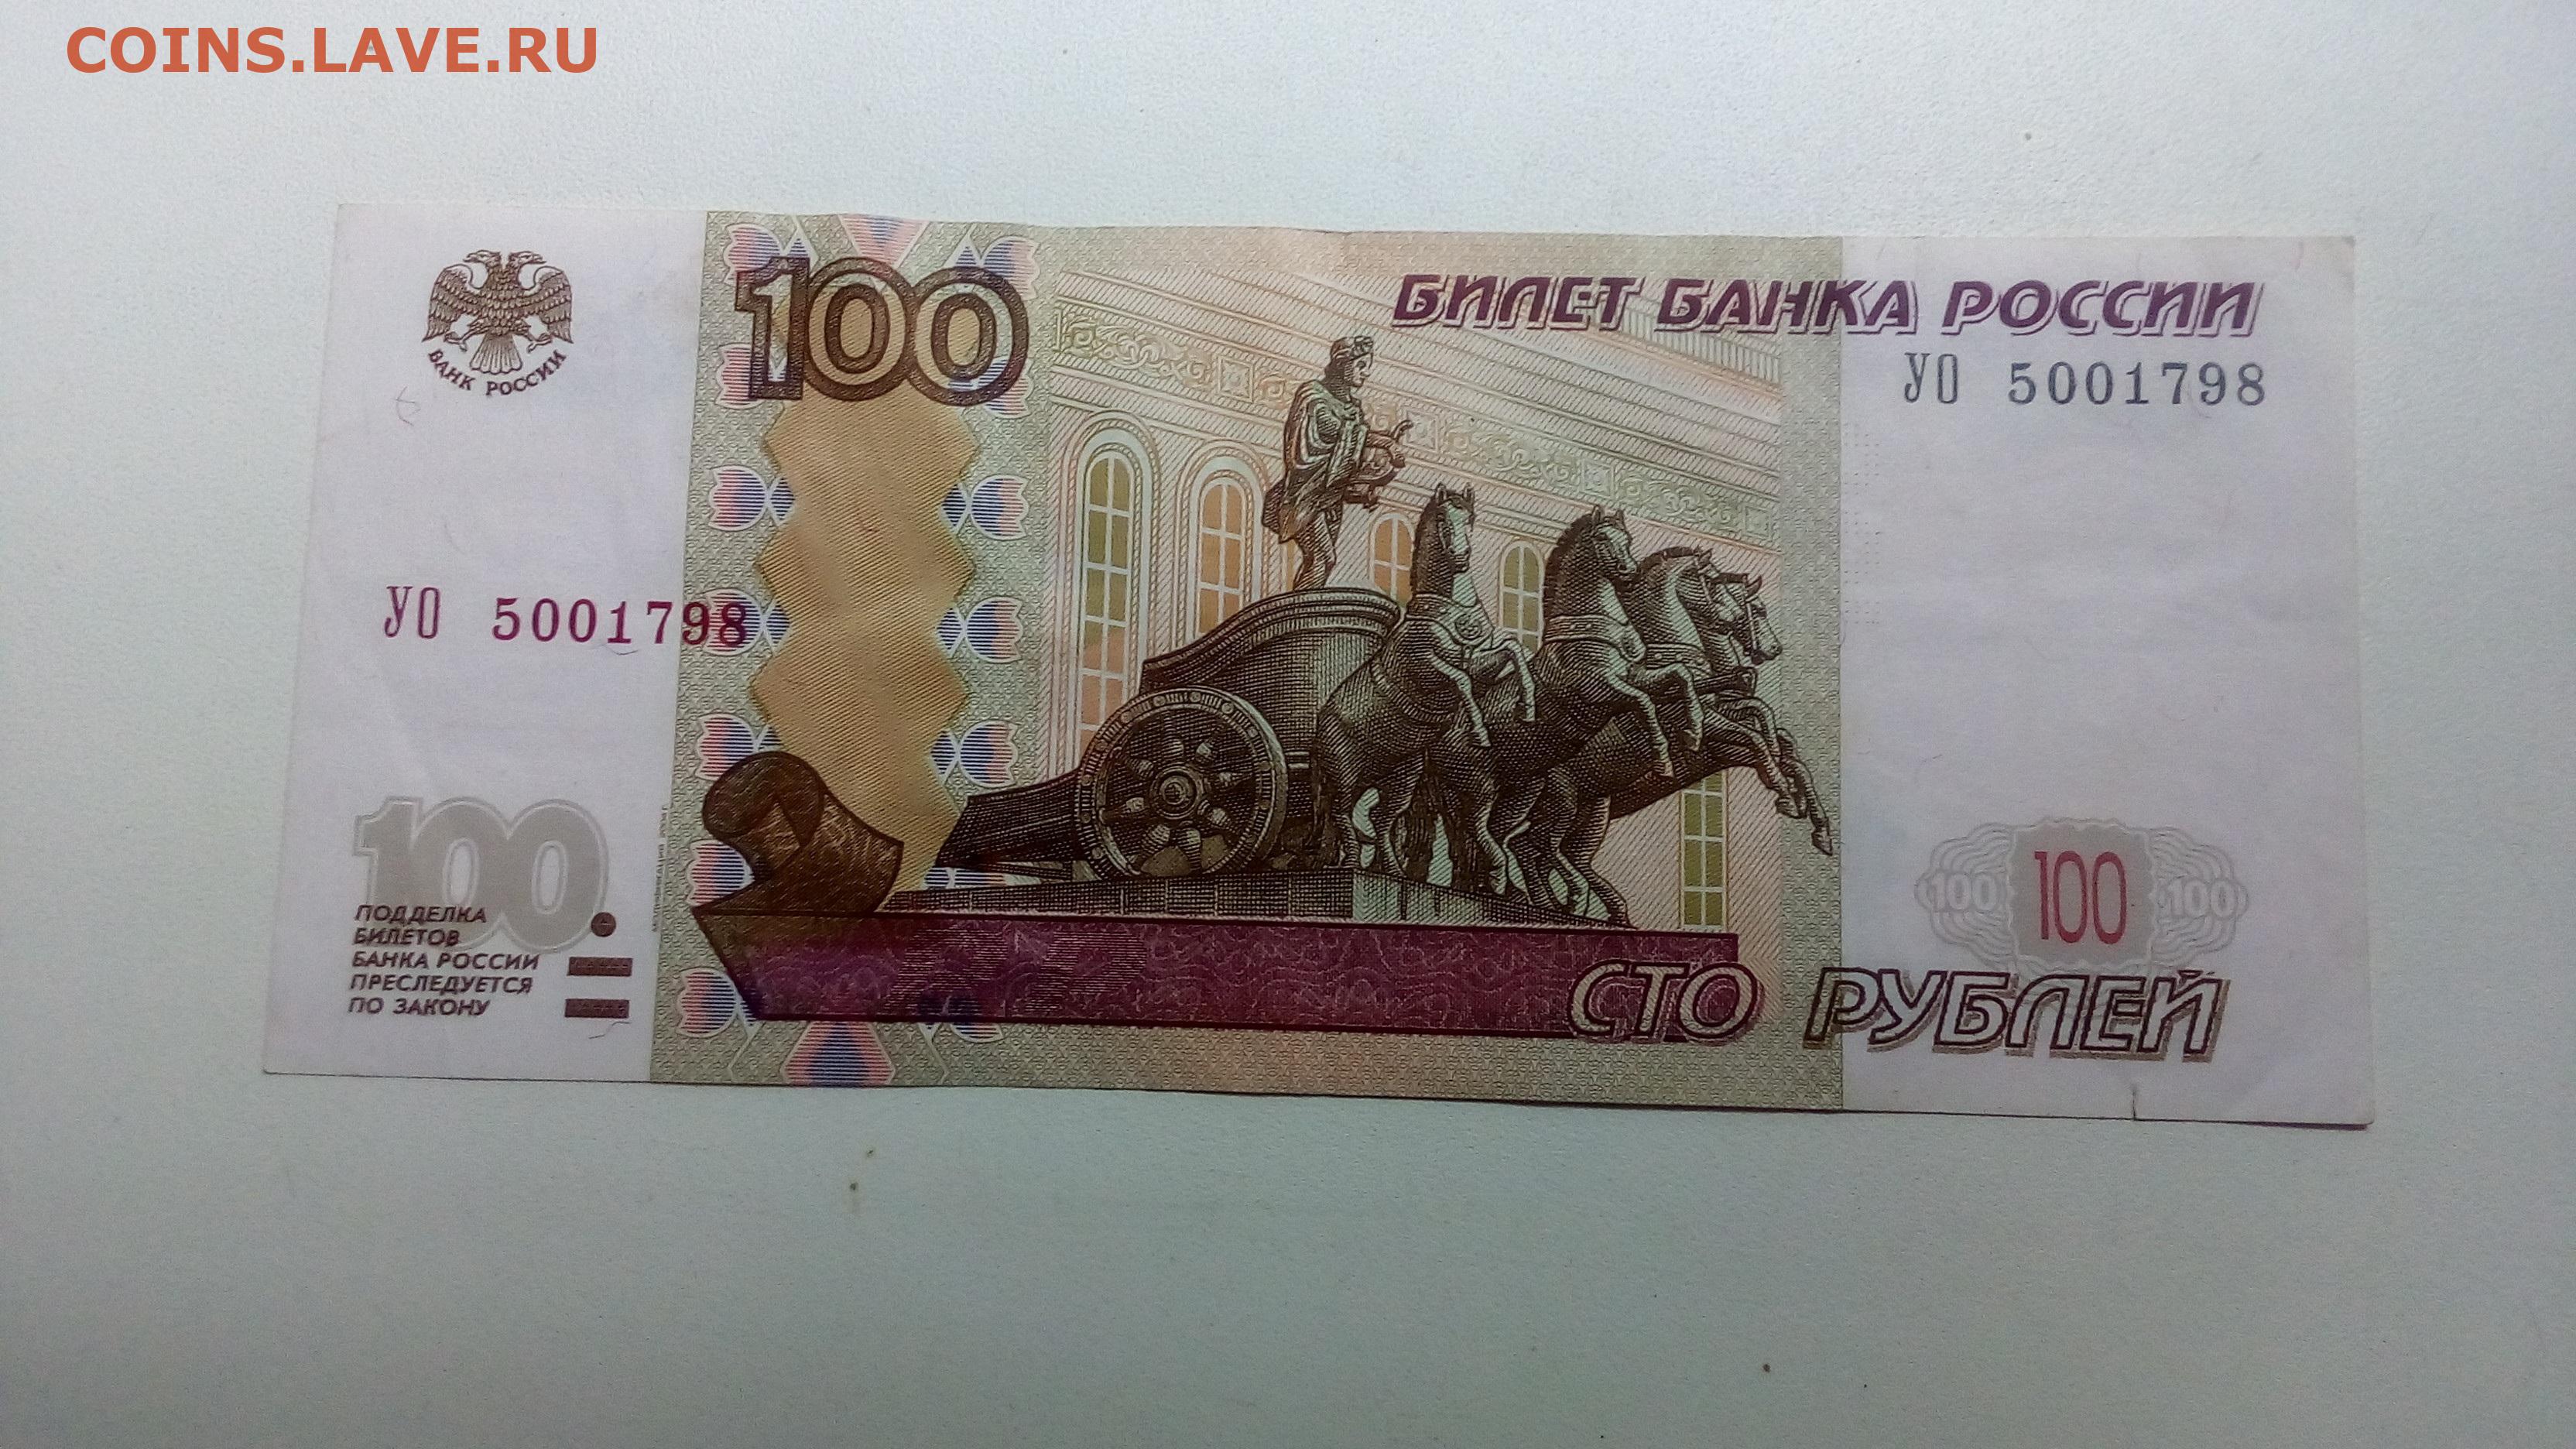 1 80 в рублях. 100 Рублей. Купюра 100 рублей. Банкнота 100 рублей 1997. СТО рублей для распечатки.